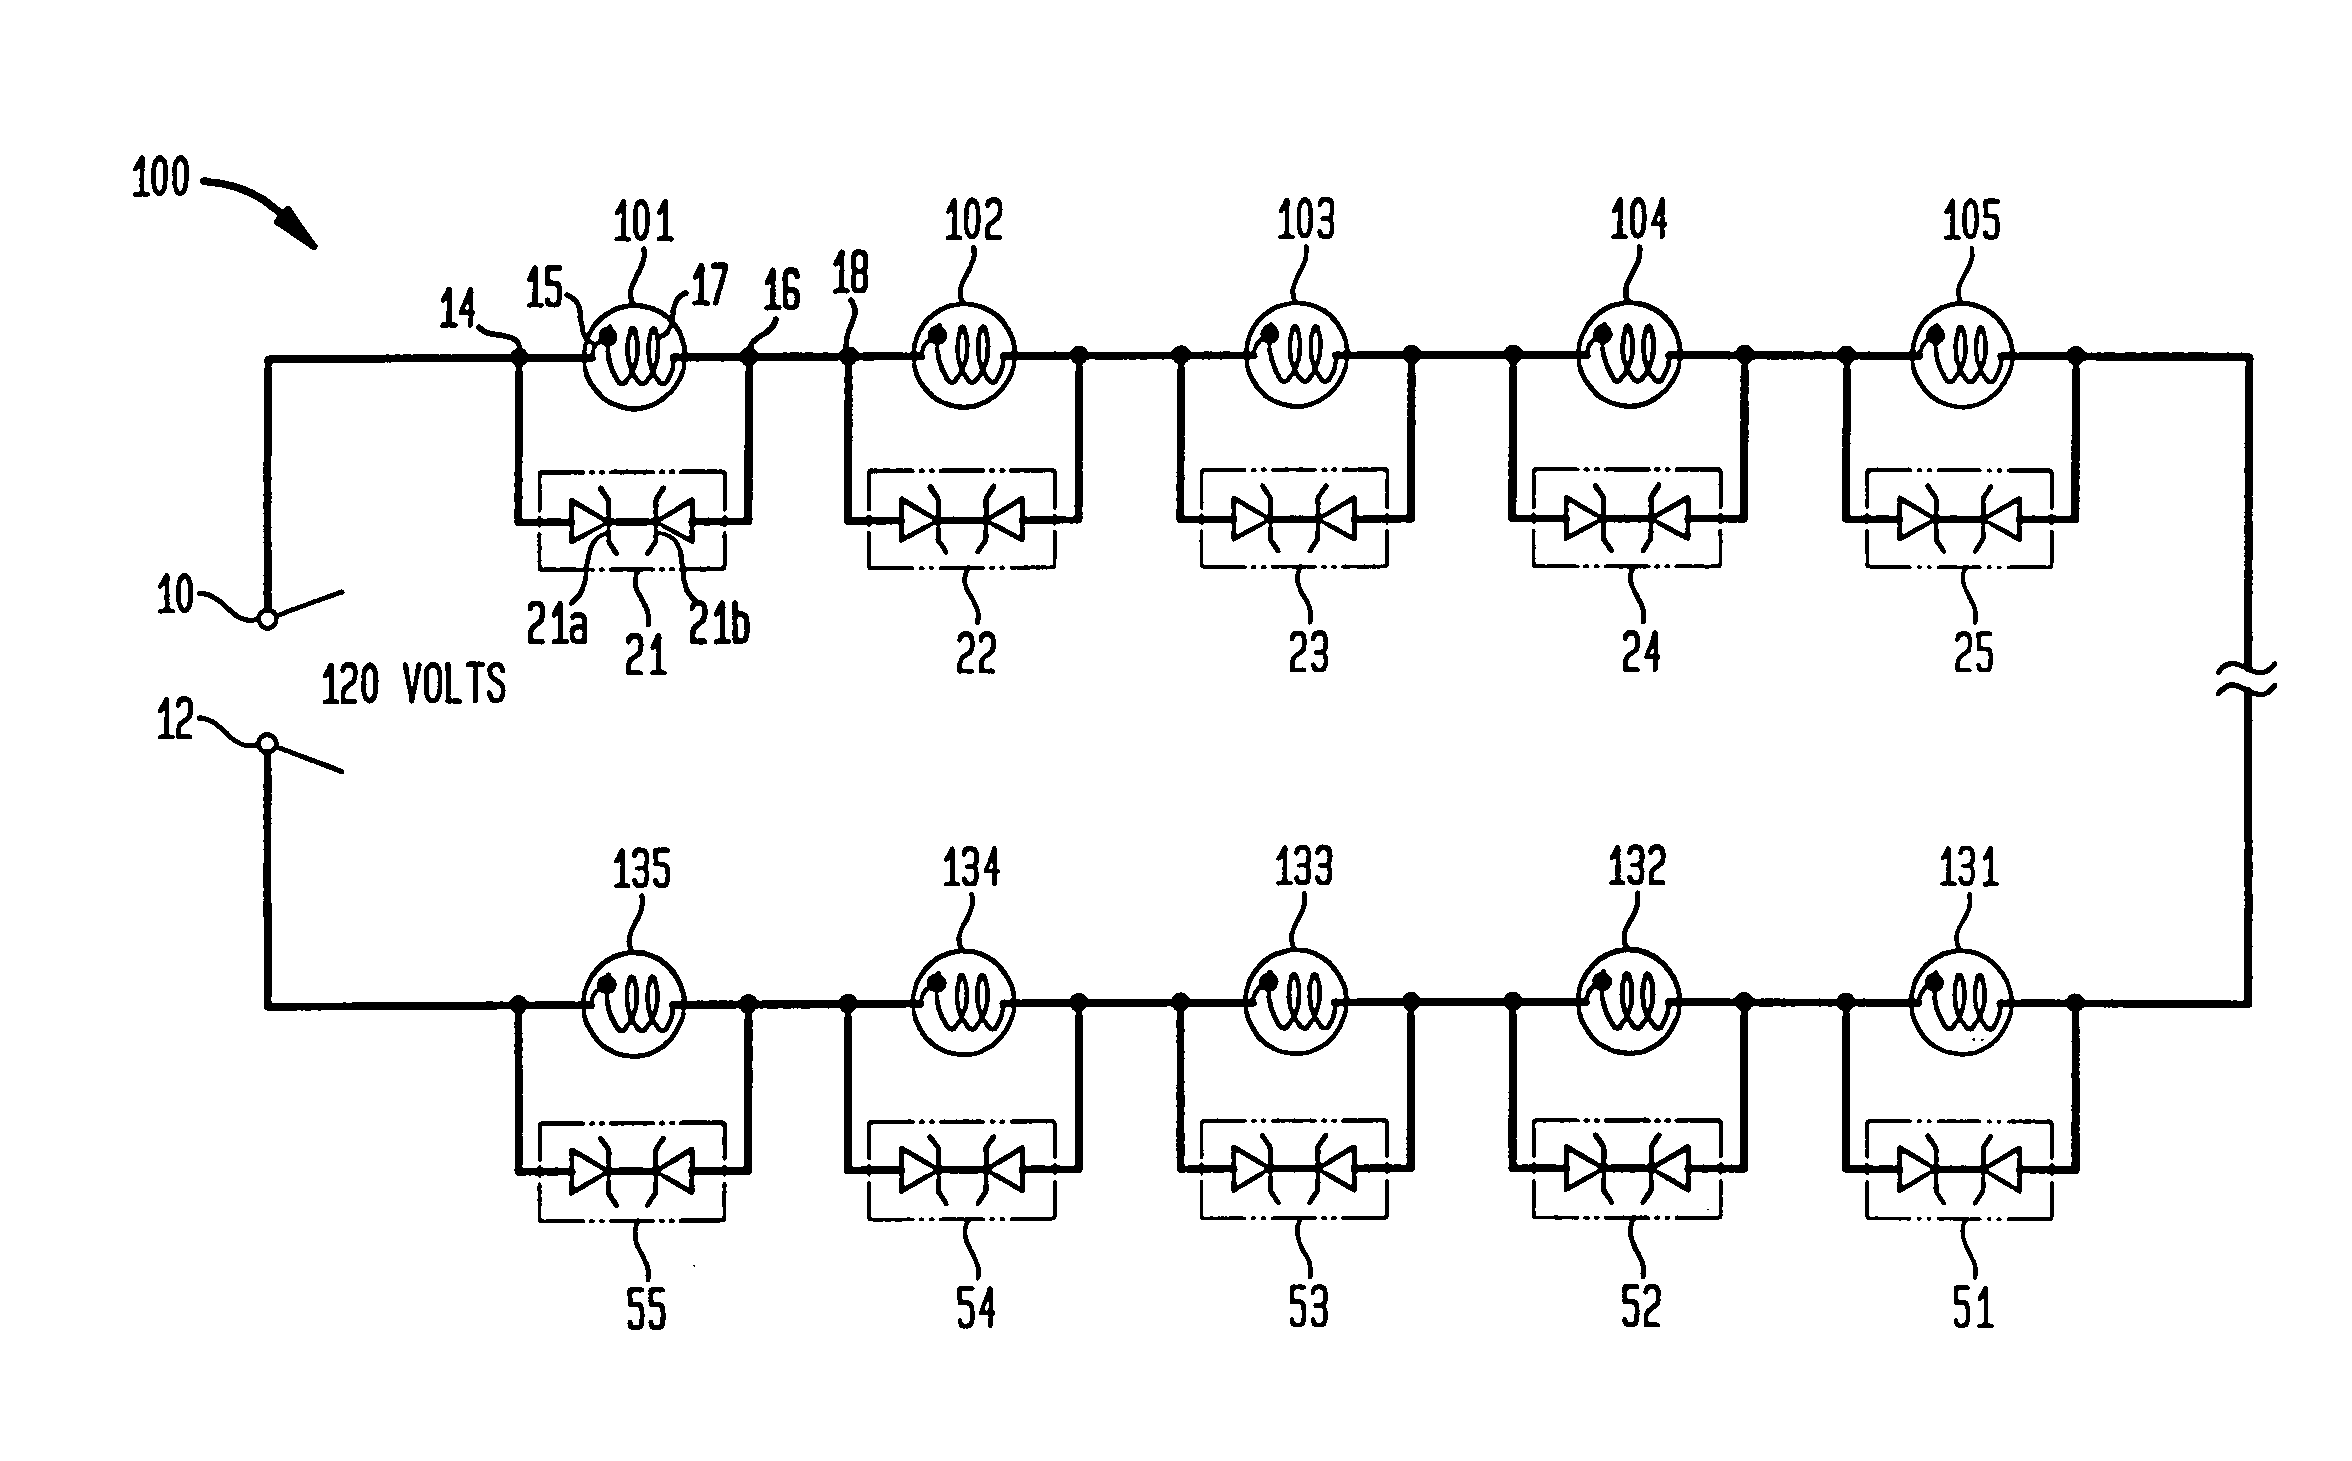 Voltage regulated light string